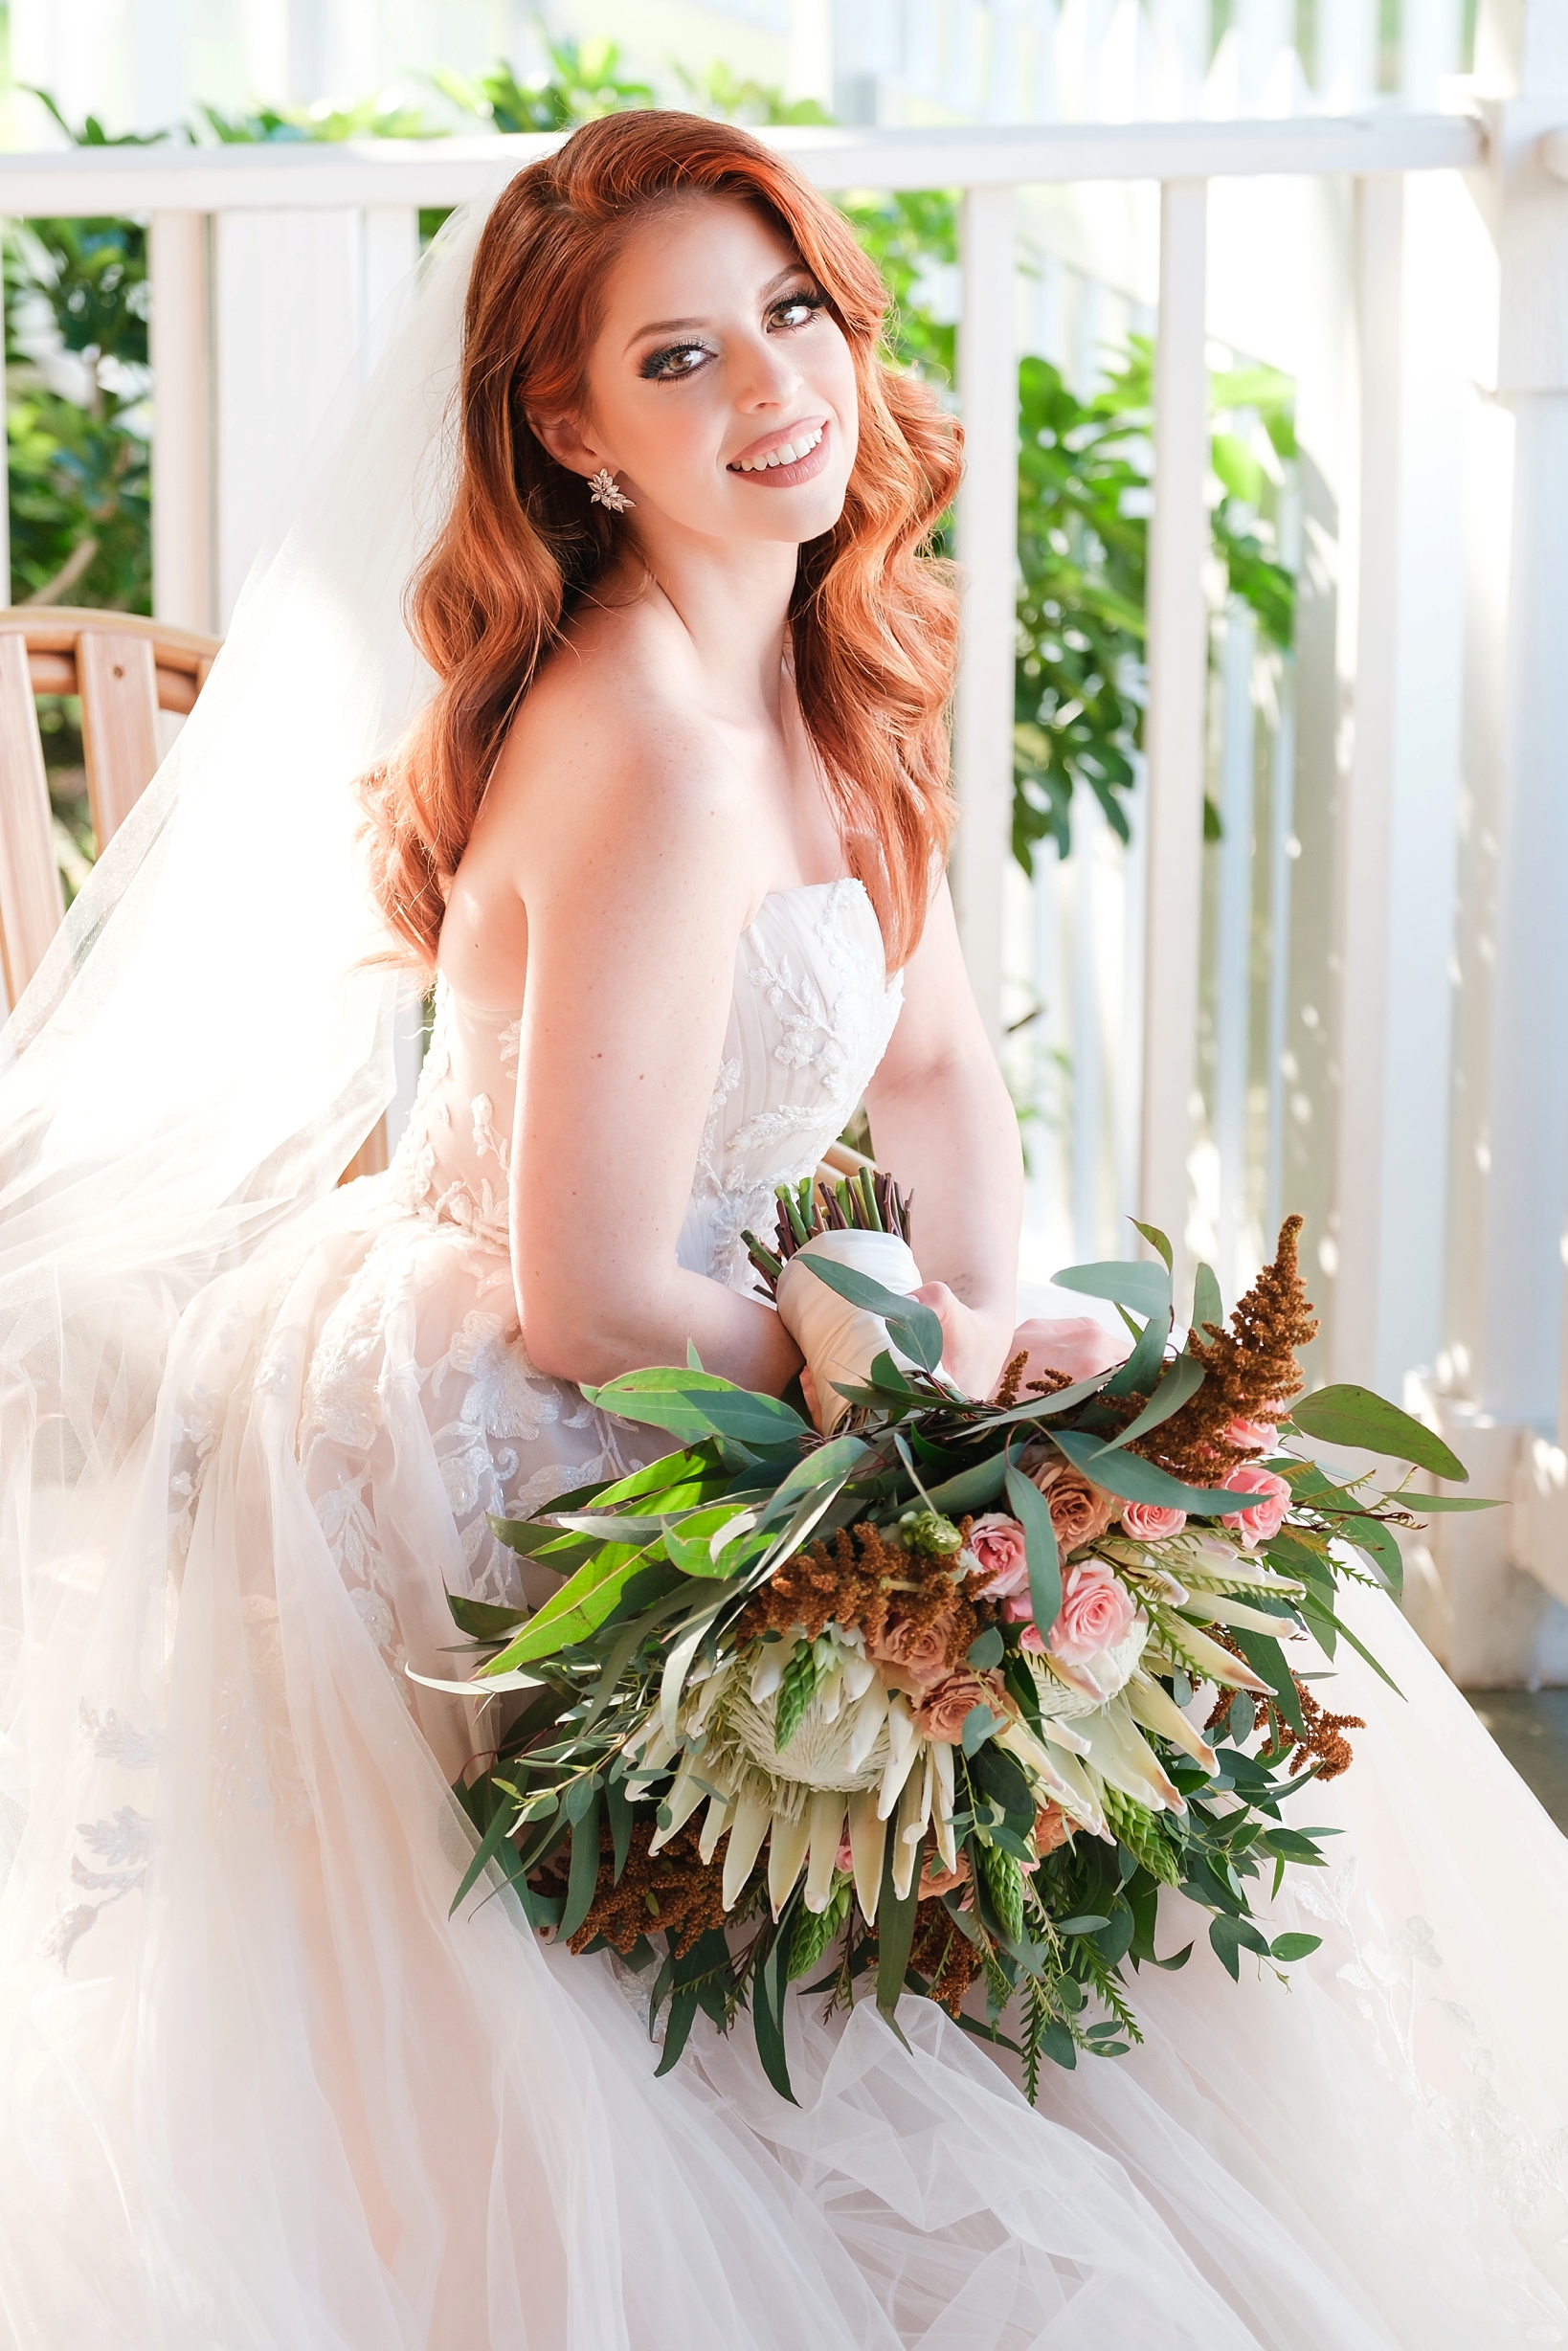 Bridal portrait of Bride holding her bouquet